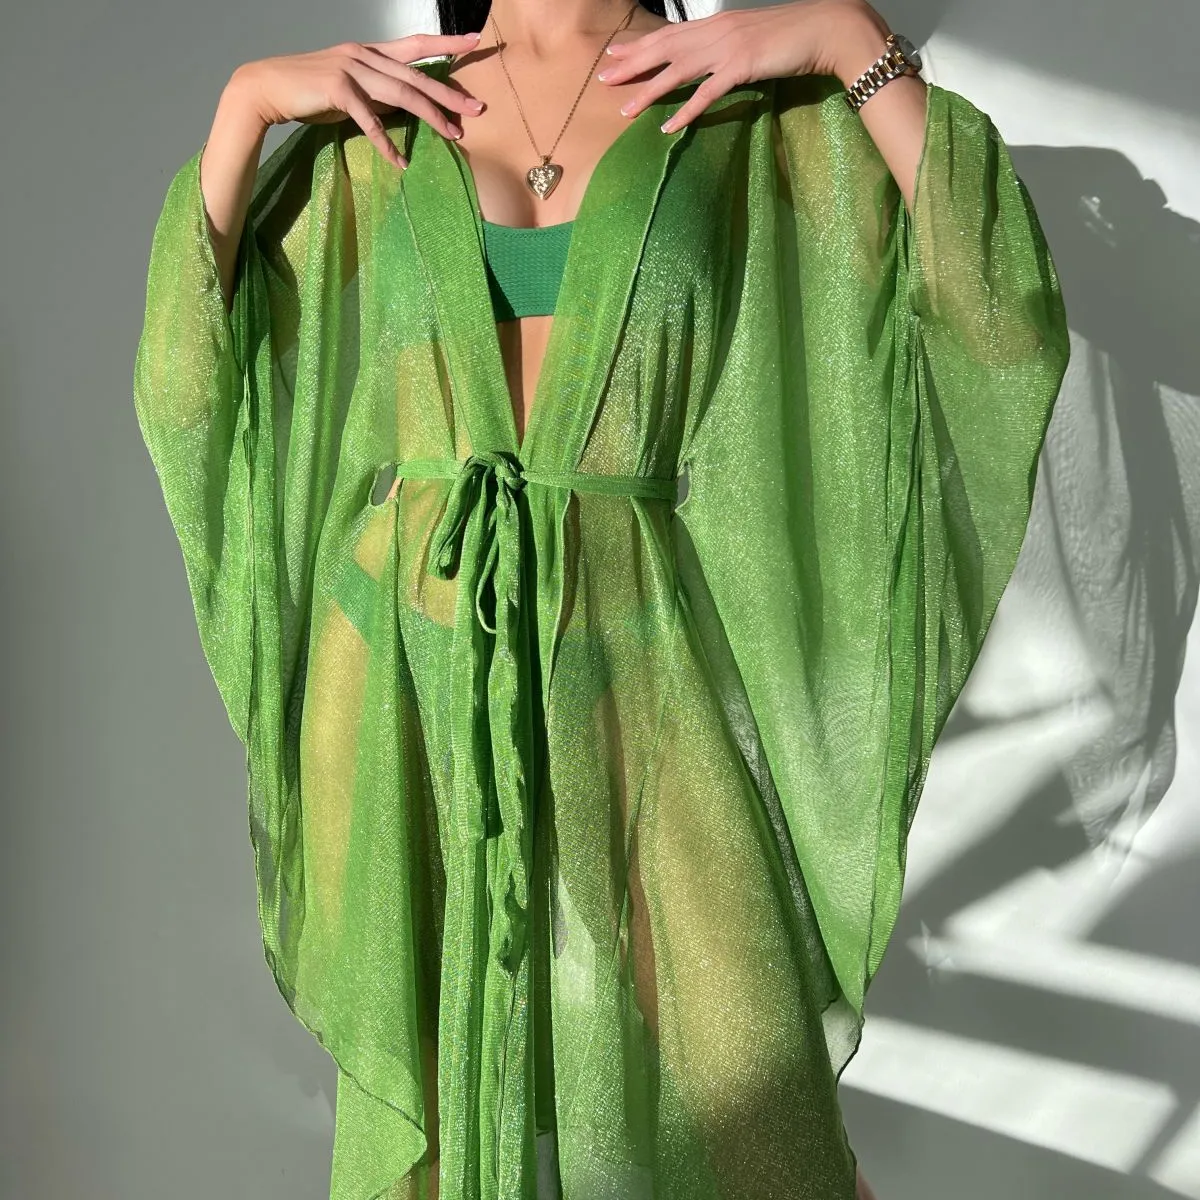 Vestido assimétrico brilhante com glitter, cordão de cintura, kimono, capa transparente, kaftan na cor verde